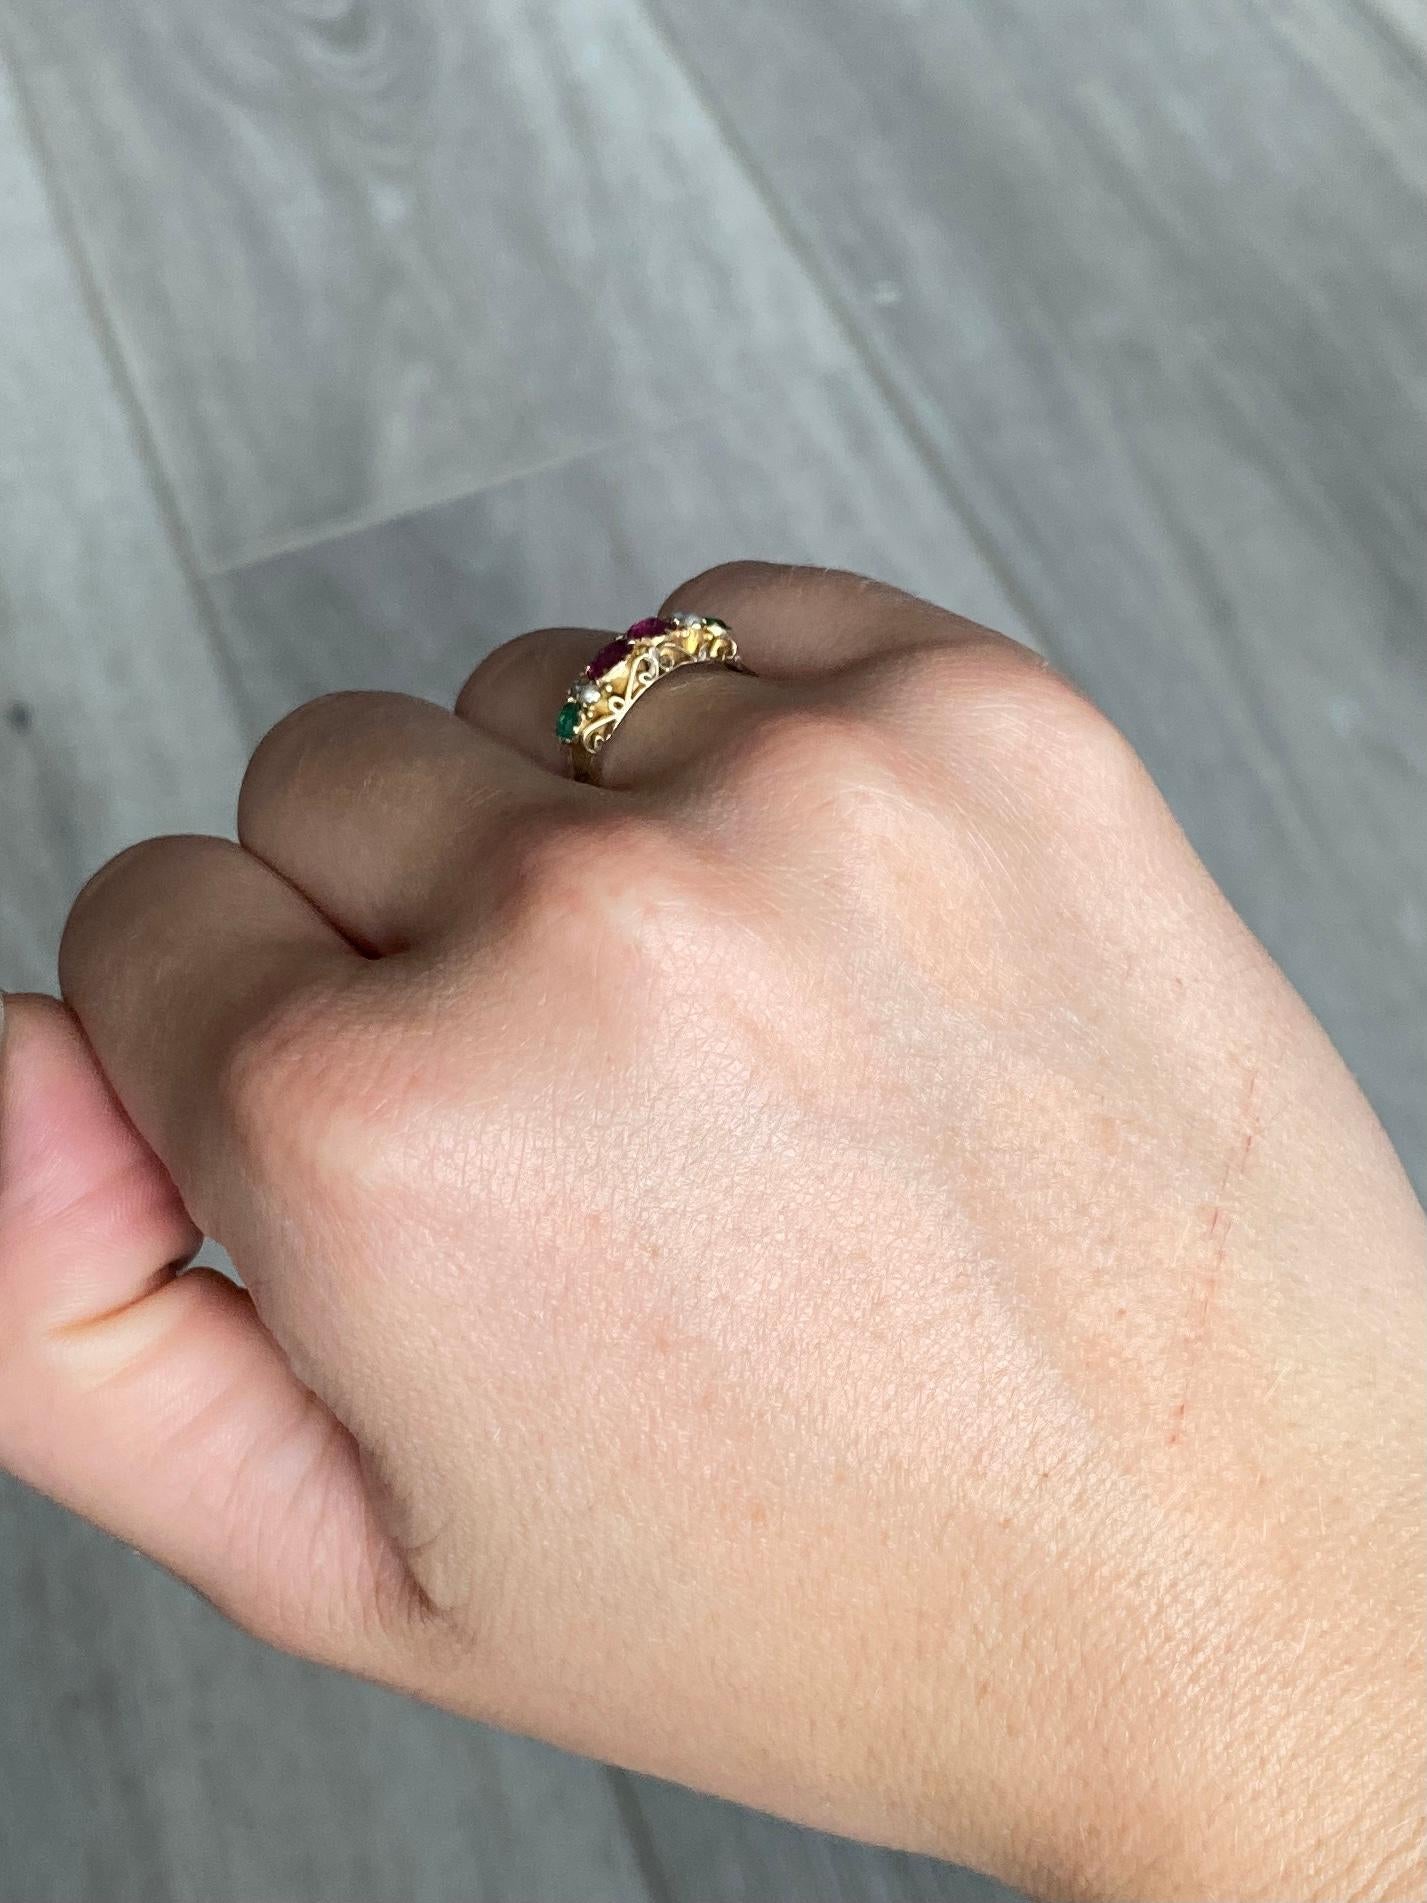 Dieses kleine Schmuckstück enthält zwei grüne Granate, zwei Perlen und zwei Rubine. Rubin insgesamt 40 Punkte und Granat insgesamt 20 Punkte. Der Ring ist aus 9-karätigem Gold modelliert und in Birmingham 1838 gestempelt.

Ringgröße: K oder 5